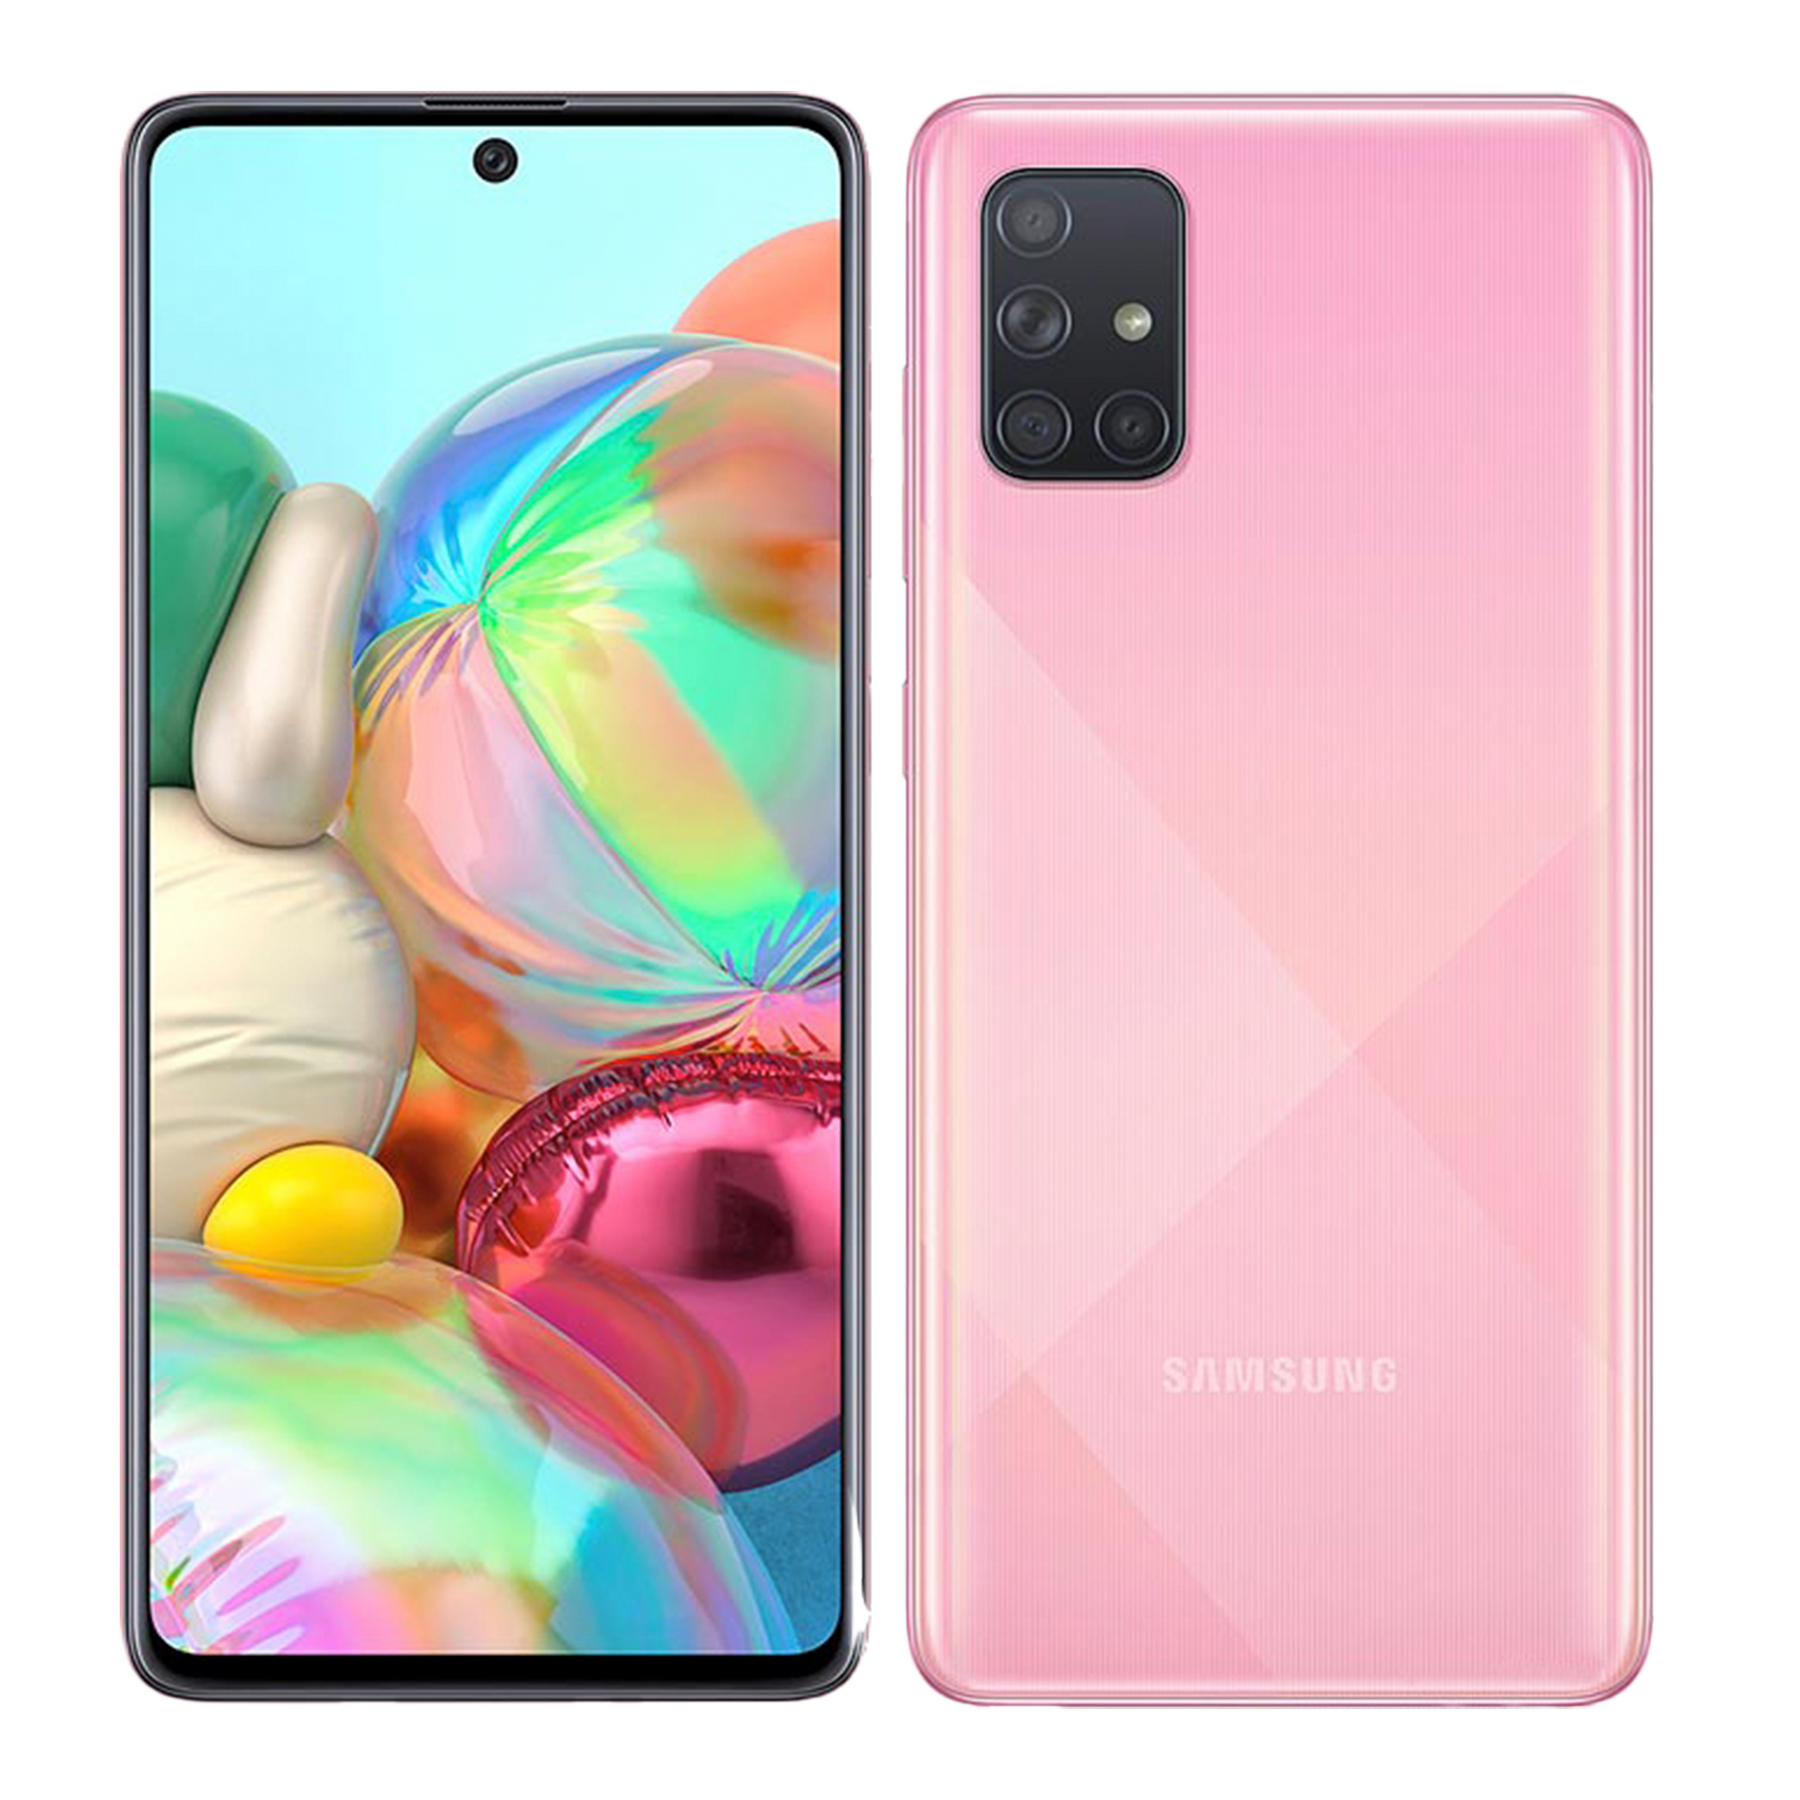 Samsung Galaxy A71 (2019)